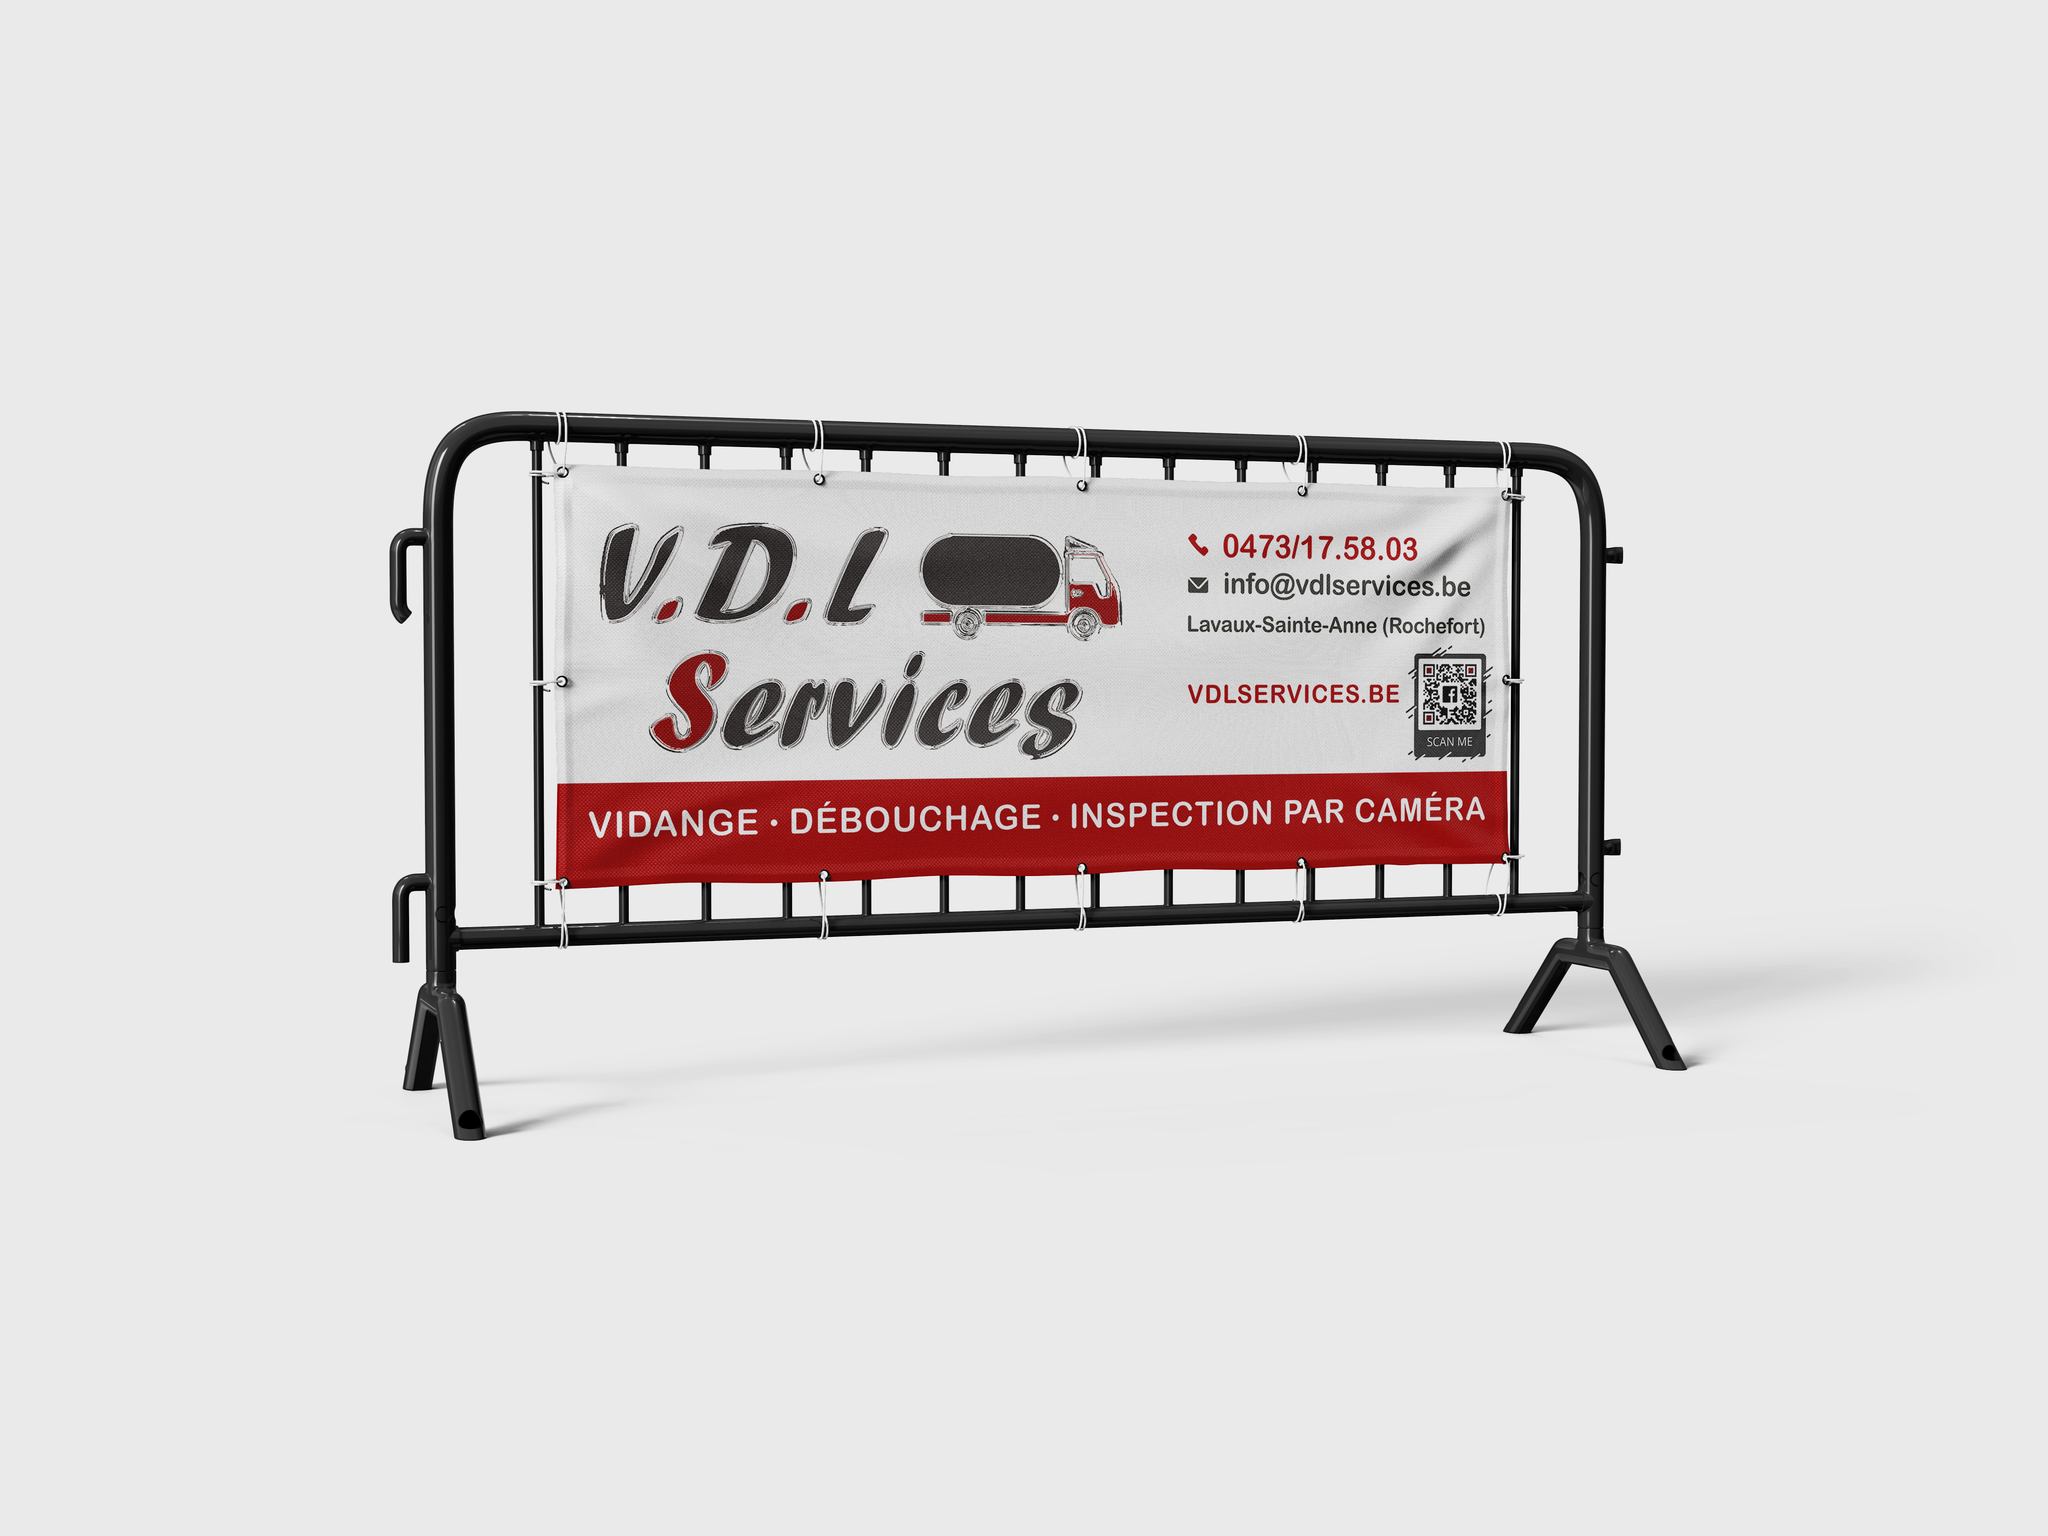 V.D.L Services